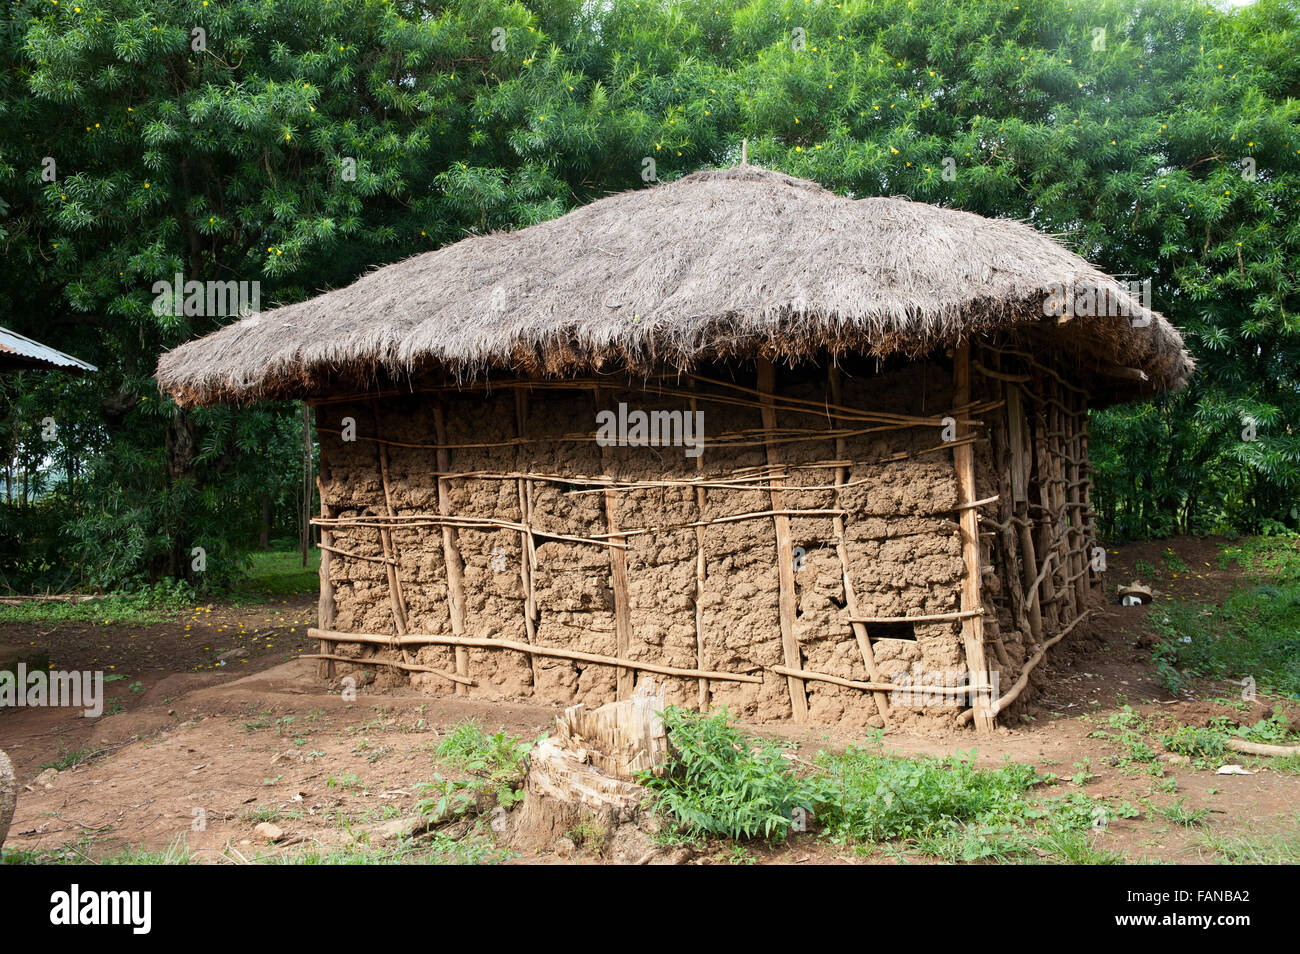 Tradicional casa keniana hechas de barro, con una choza de paja. Kenya. Foto de stock